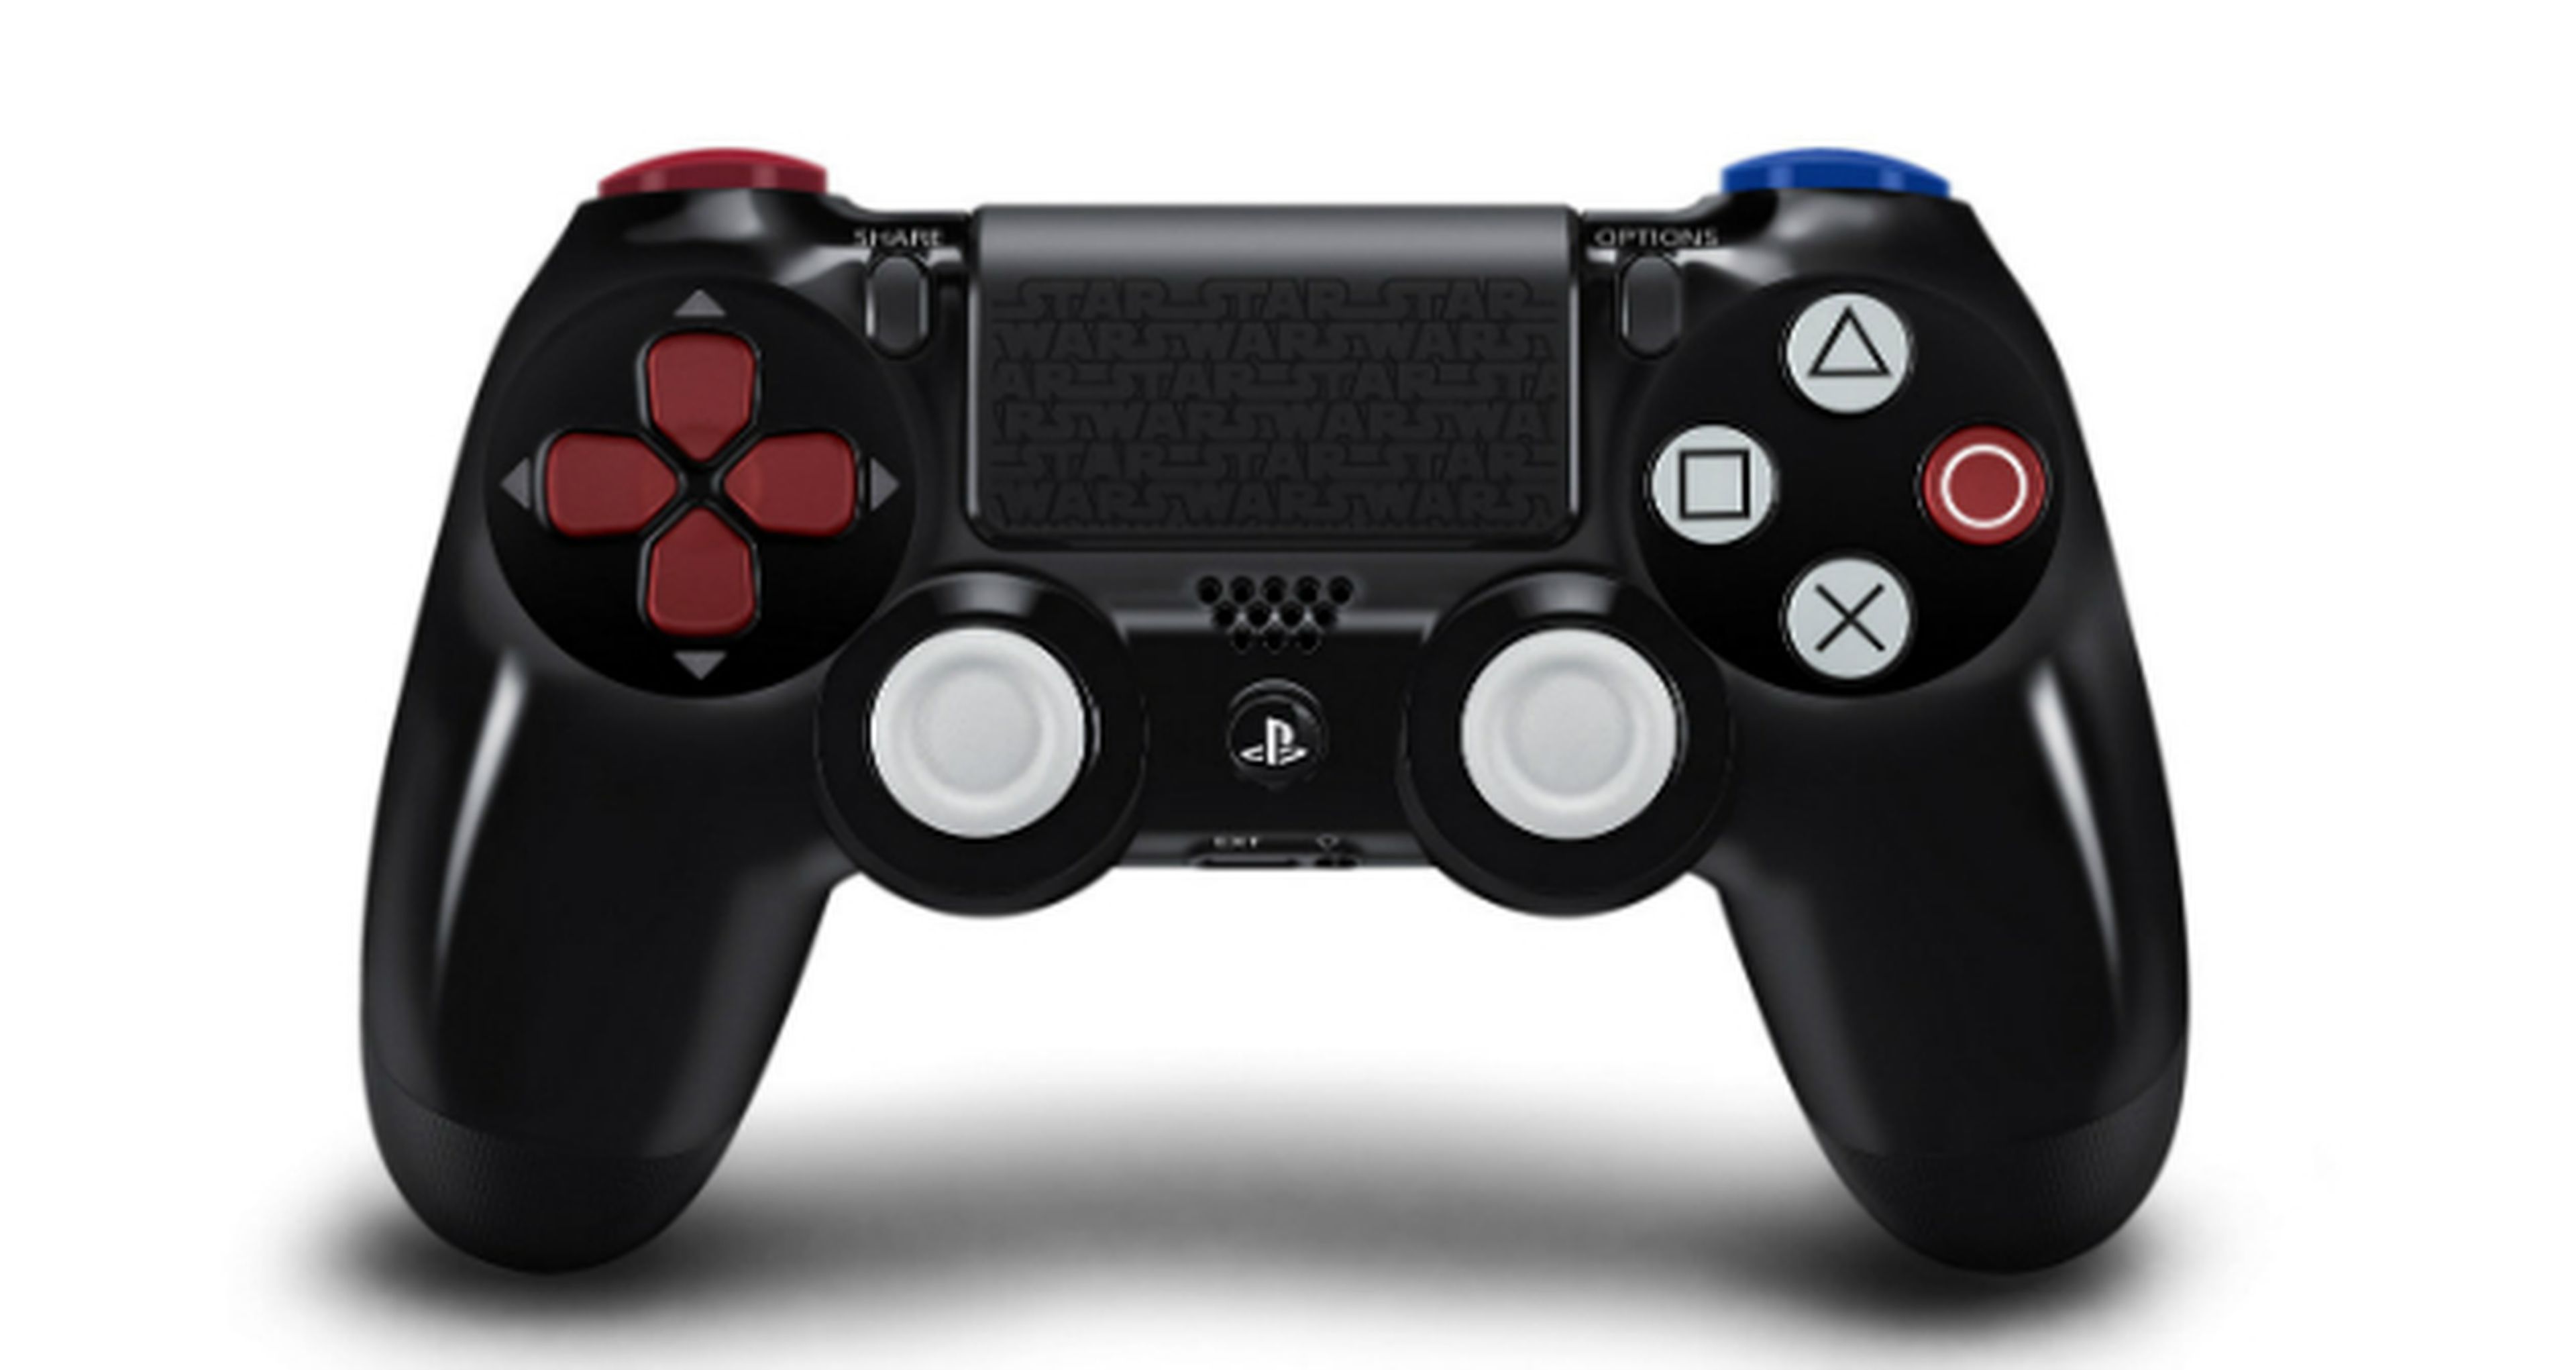 Equipa tu PlayStation con los mejores accesorios: auriculares, cargadores  de mandos, discos duros… - Meristation